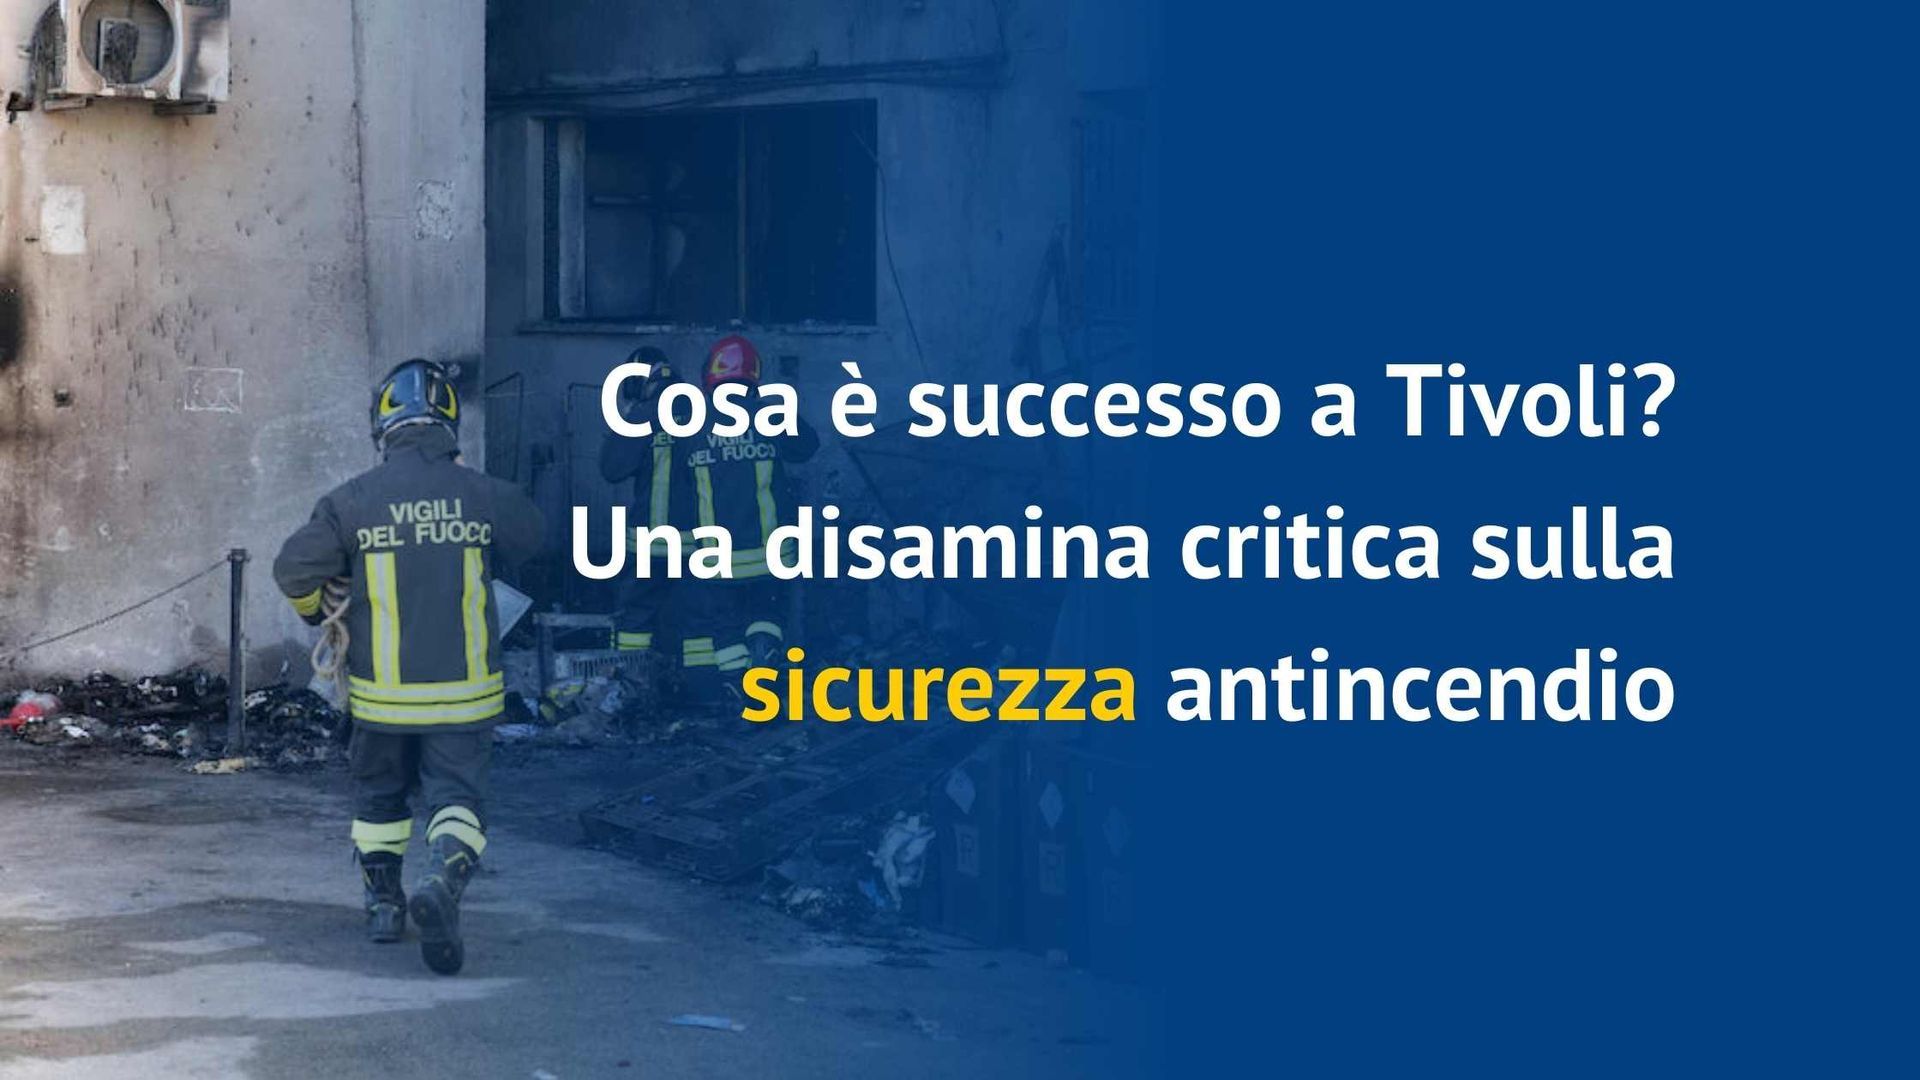 Analisi critica sulla sicurezza antincendio nell'incidente di Tivoli.